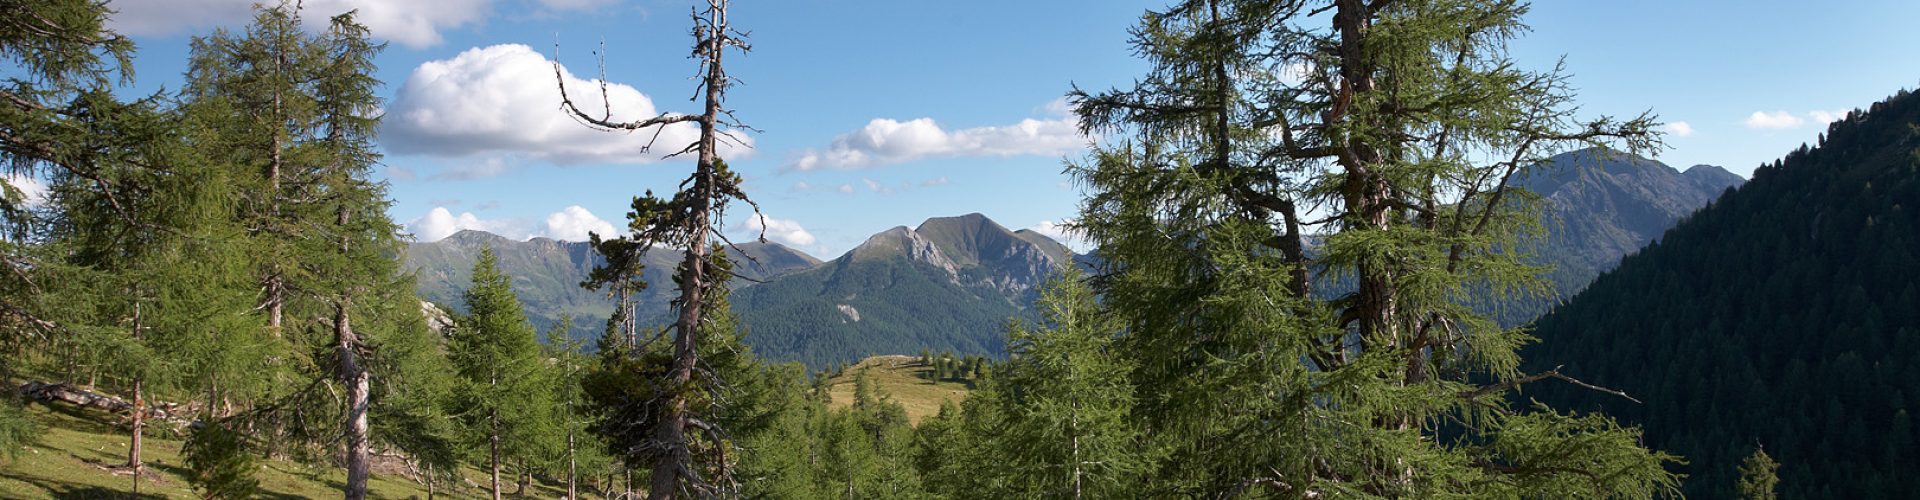 Lärchenwald im Nationalpark Nockberge, Heiligenbach, Kärnten, Ös